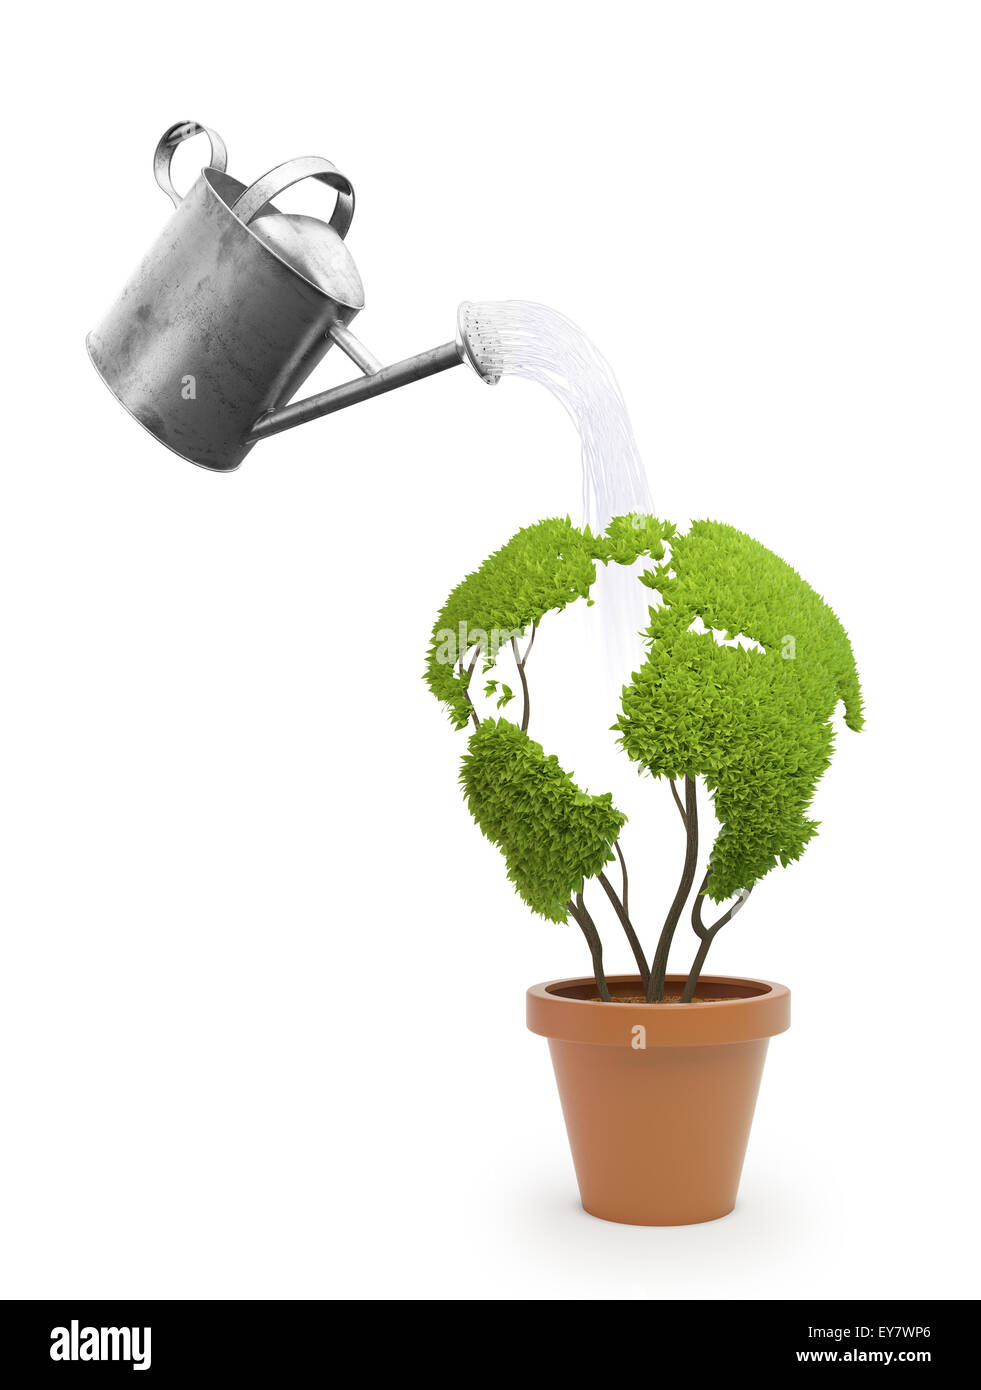 Topfpflanze, geformt wie eine Weltkarte - Ökologie und grüne Lifestyle-Konzept Stockfoto